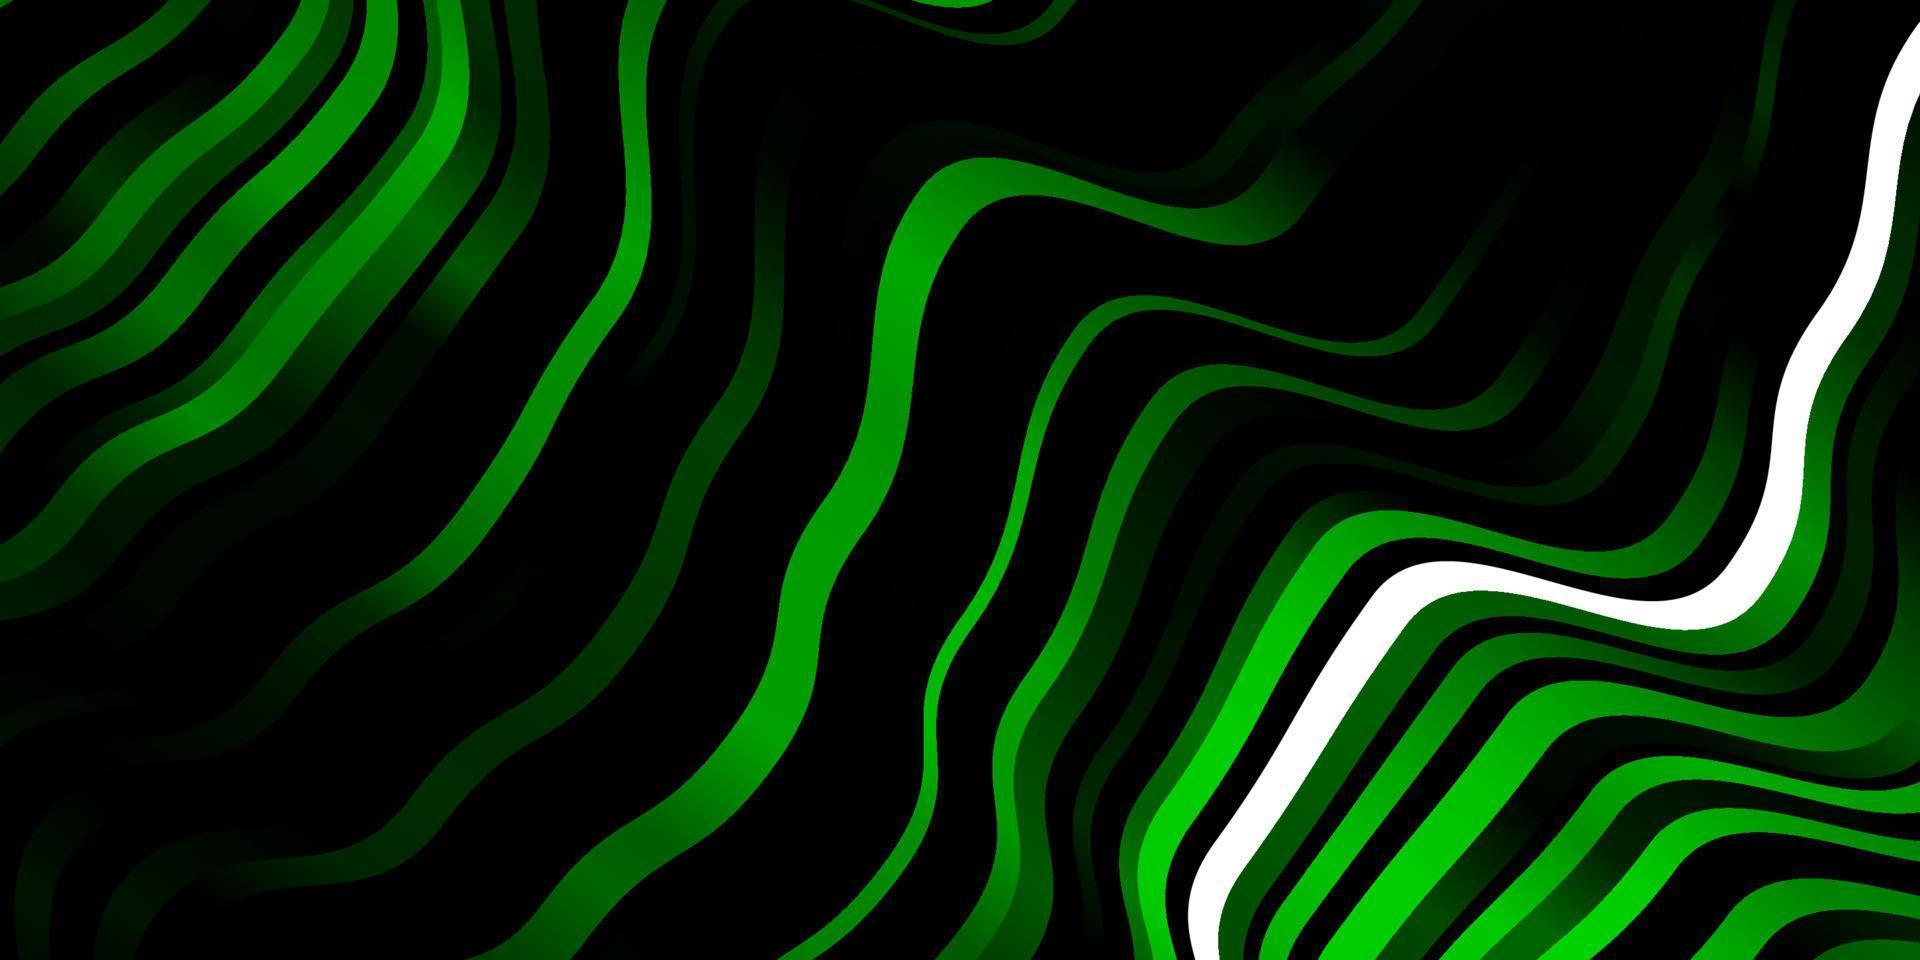 fundo vector verde escuro com linhas curvas.